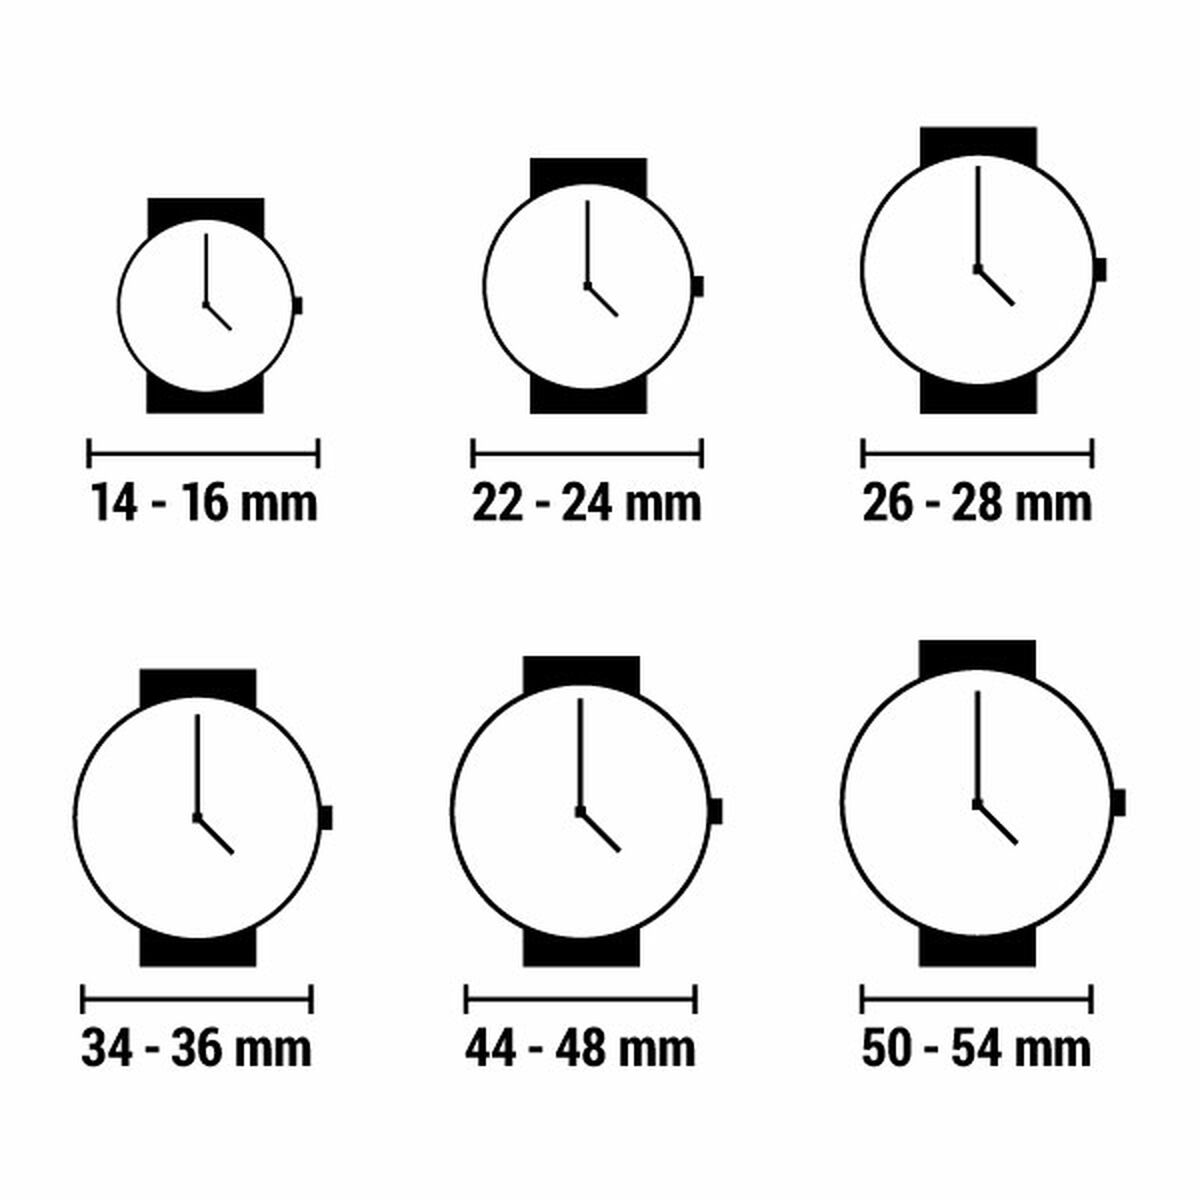 Horloge Dames Time Force TF2067L-03M (Ø 23 mm)